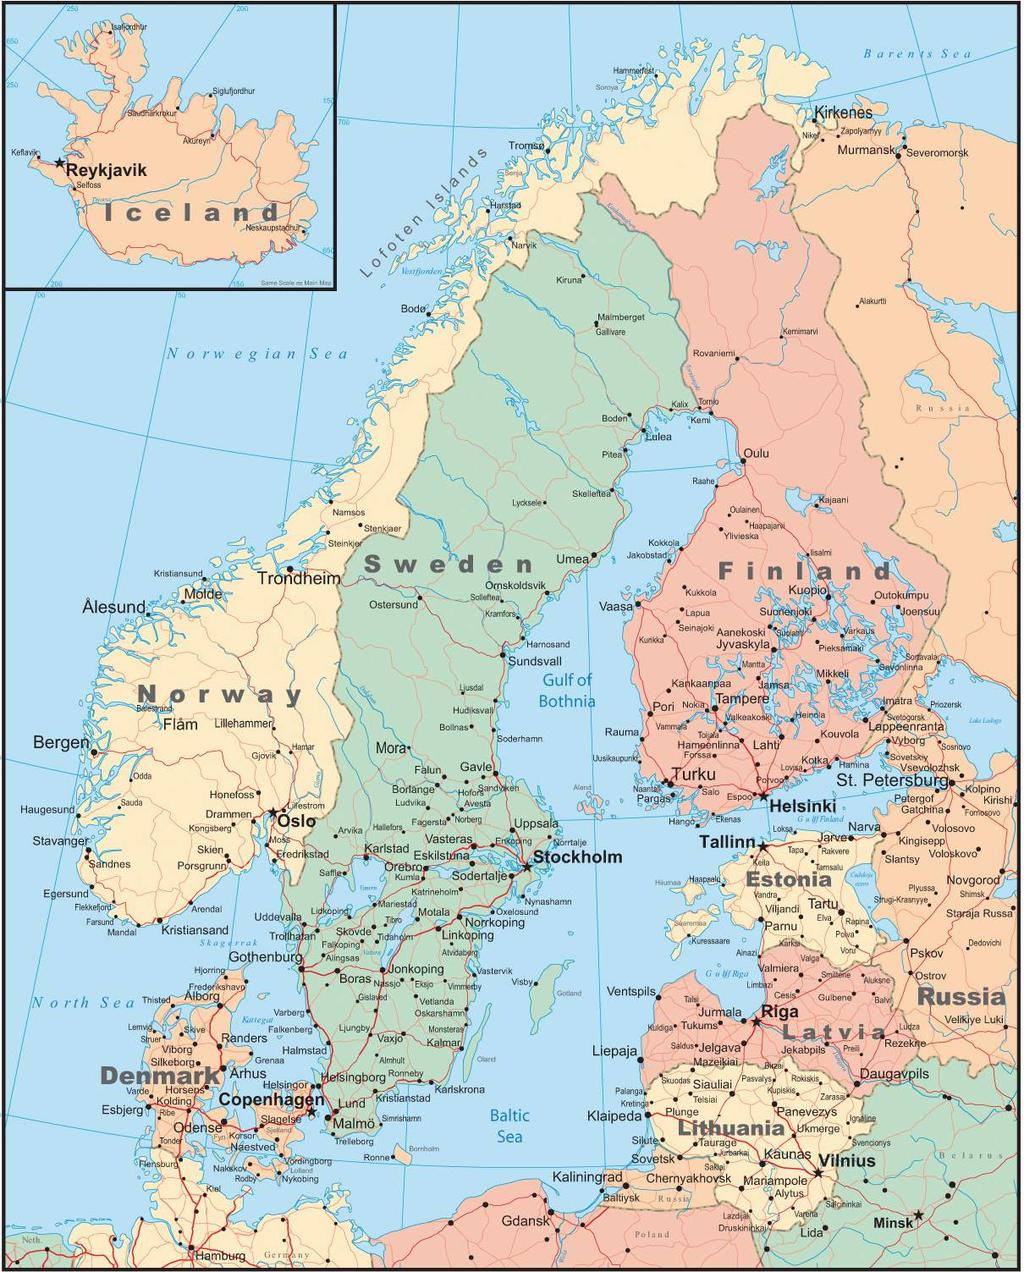 Map of Nordic Region www.